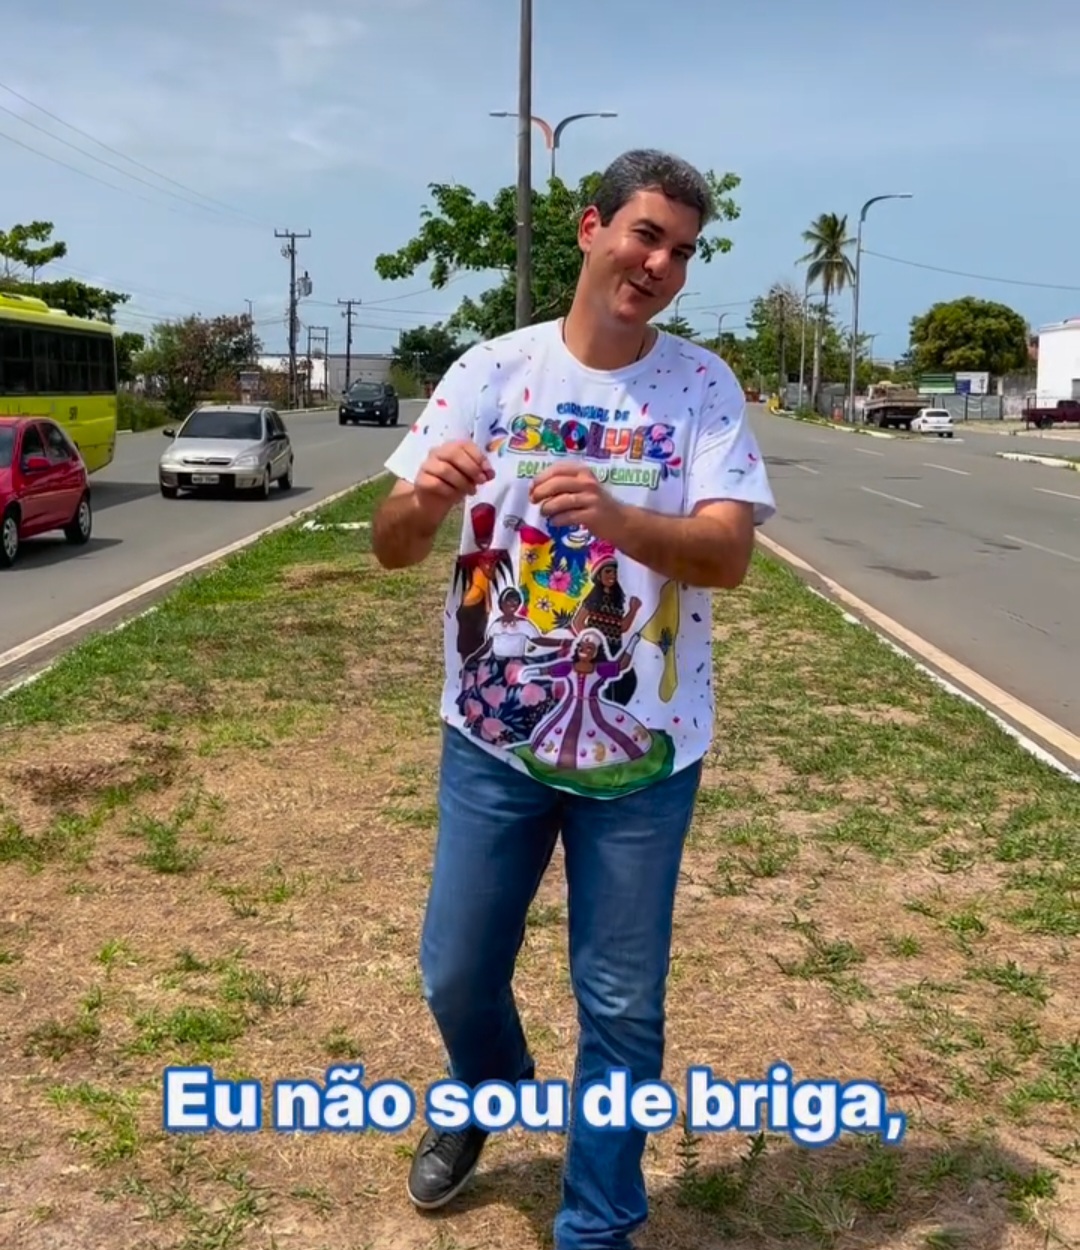 “Eu não sou de briga”, diz Braide ao anunciar seu carnaval no trecho final da Beira-Mar